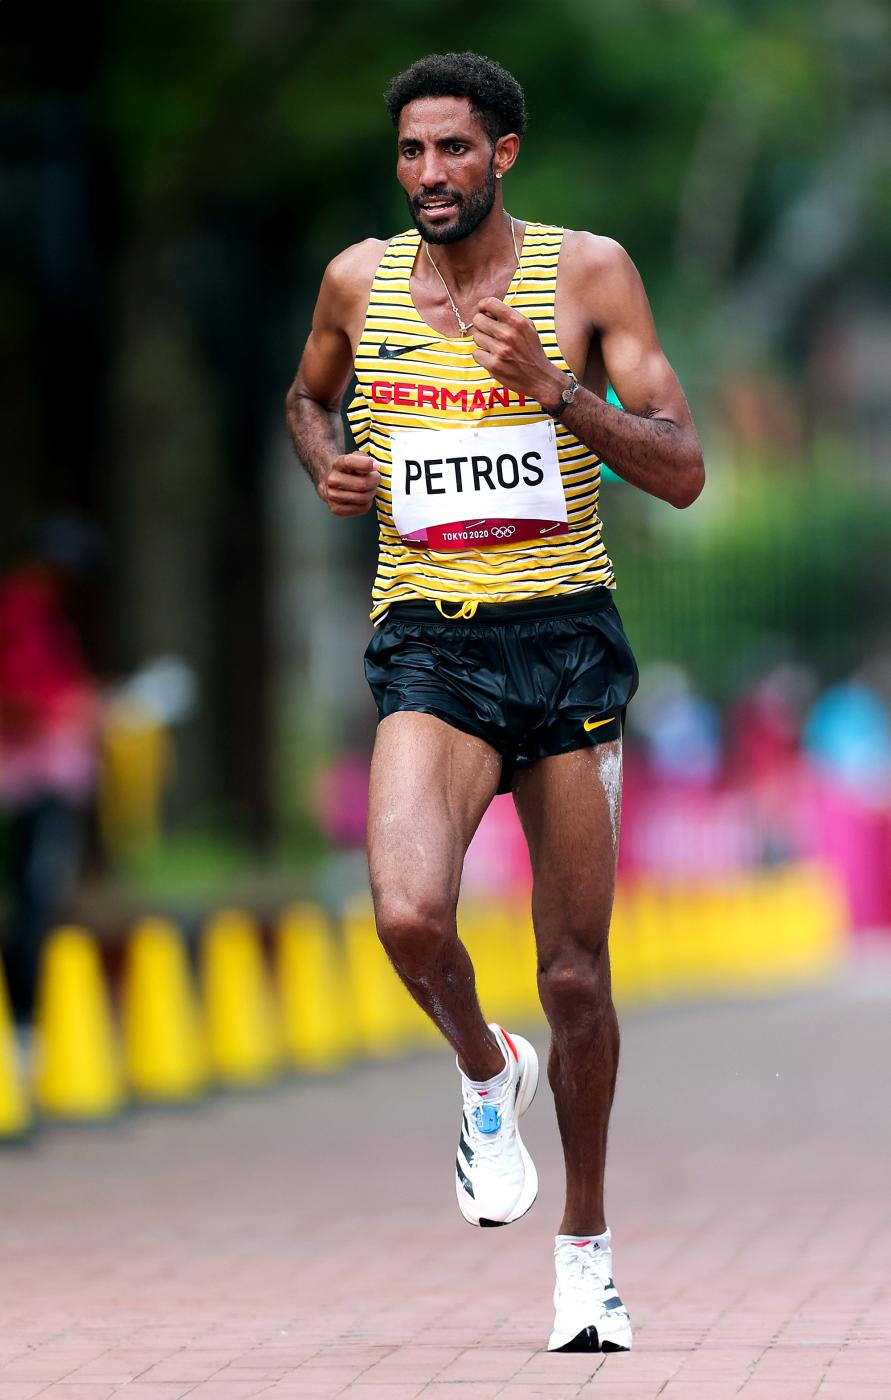 Amanal Petros, Deutschlands Top-Läufer, hält die Landesrekorde über Marathon und Halbmarathon.